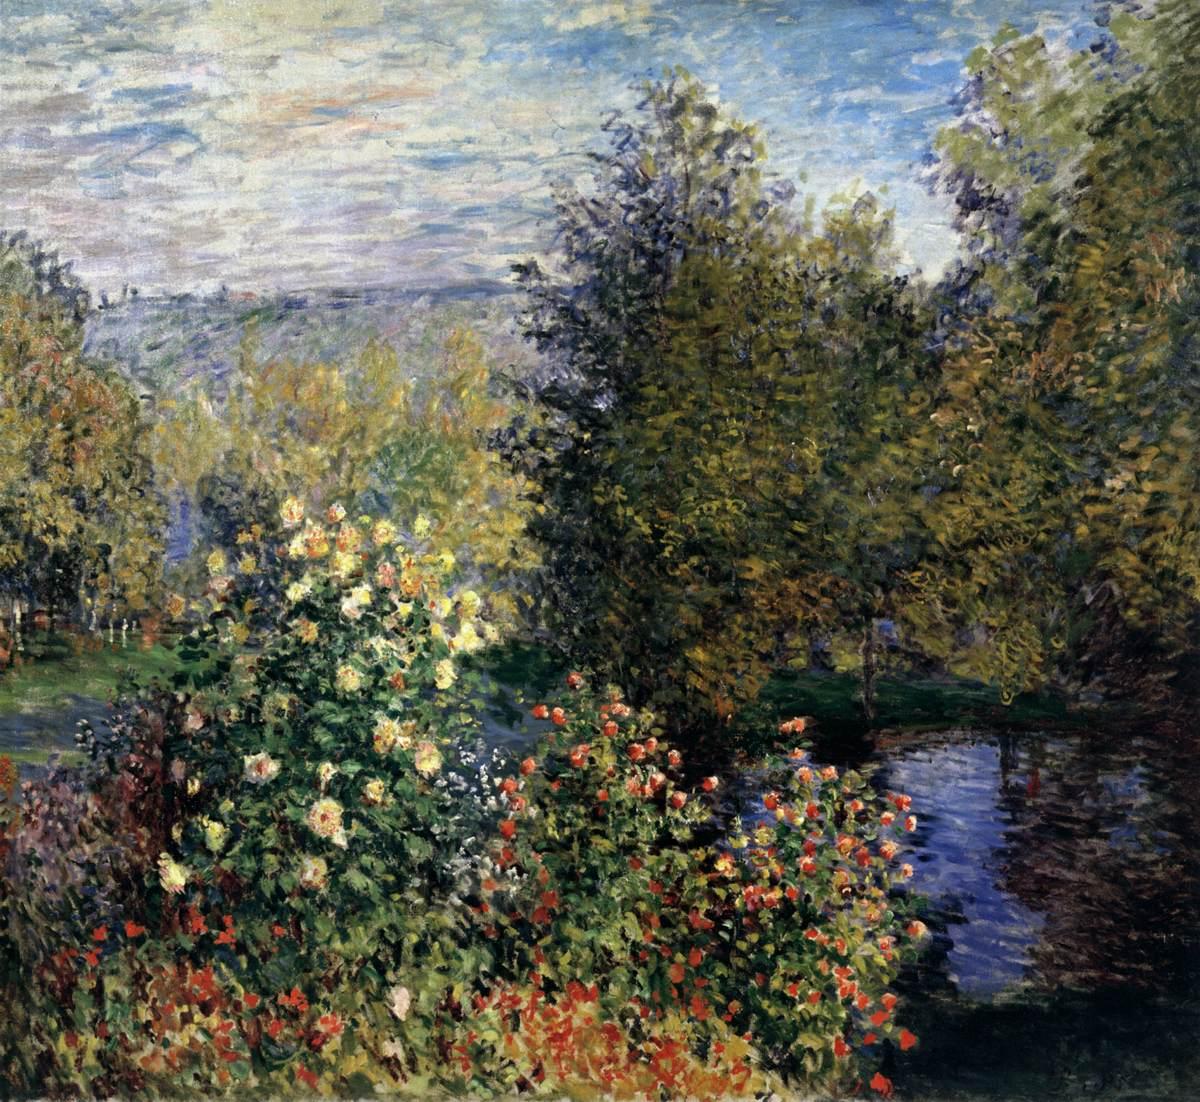 印象派画家莫奈花园题材的油画作品高清大图《蒙特热龙的花园》